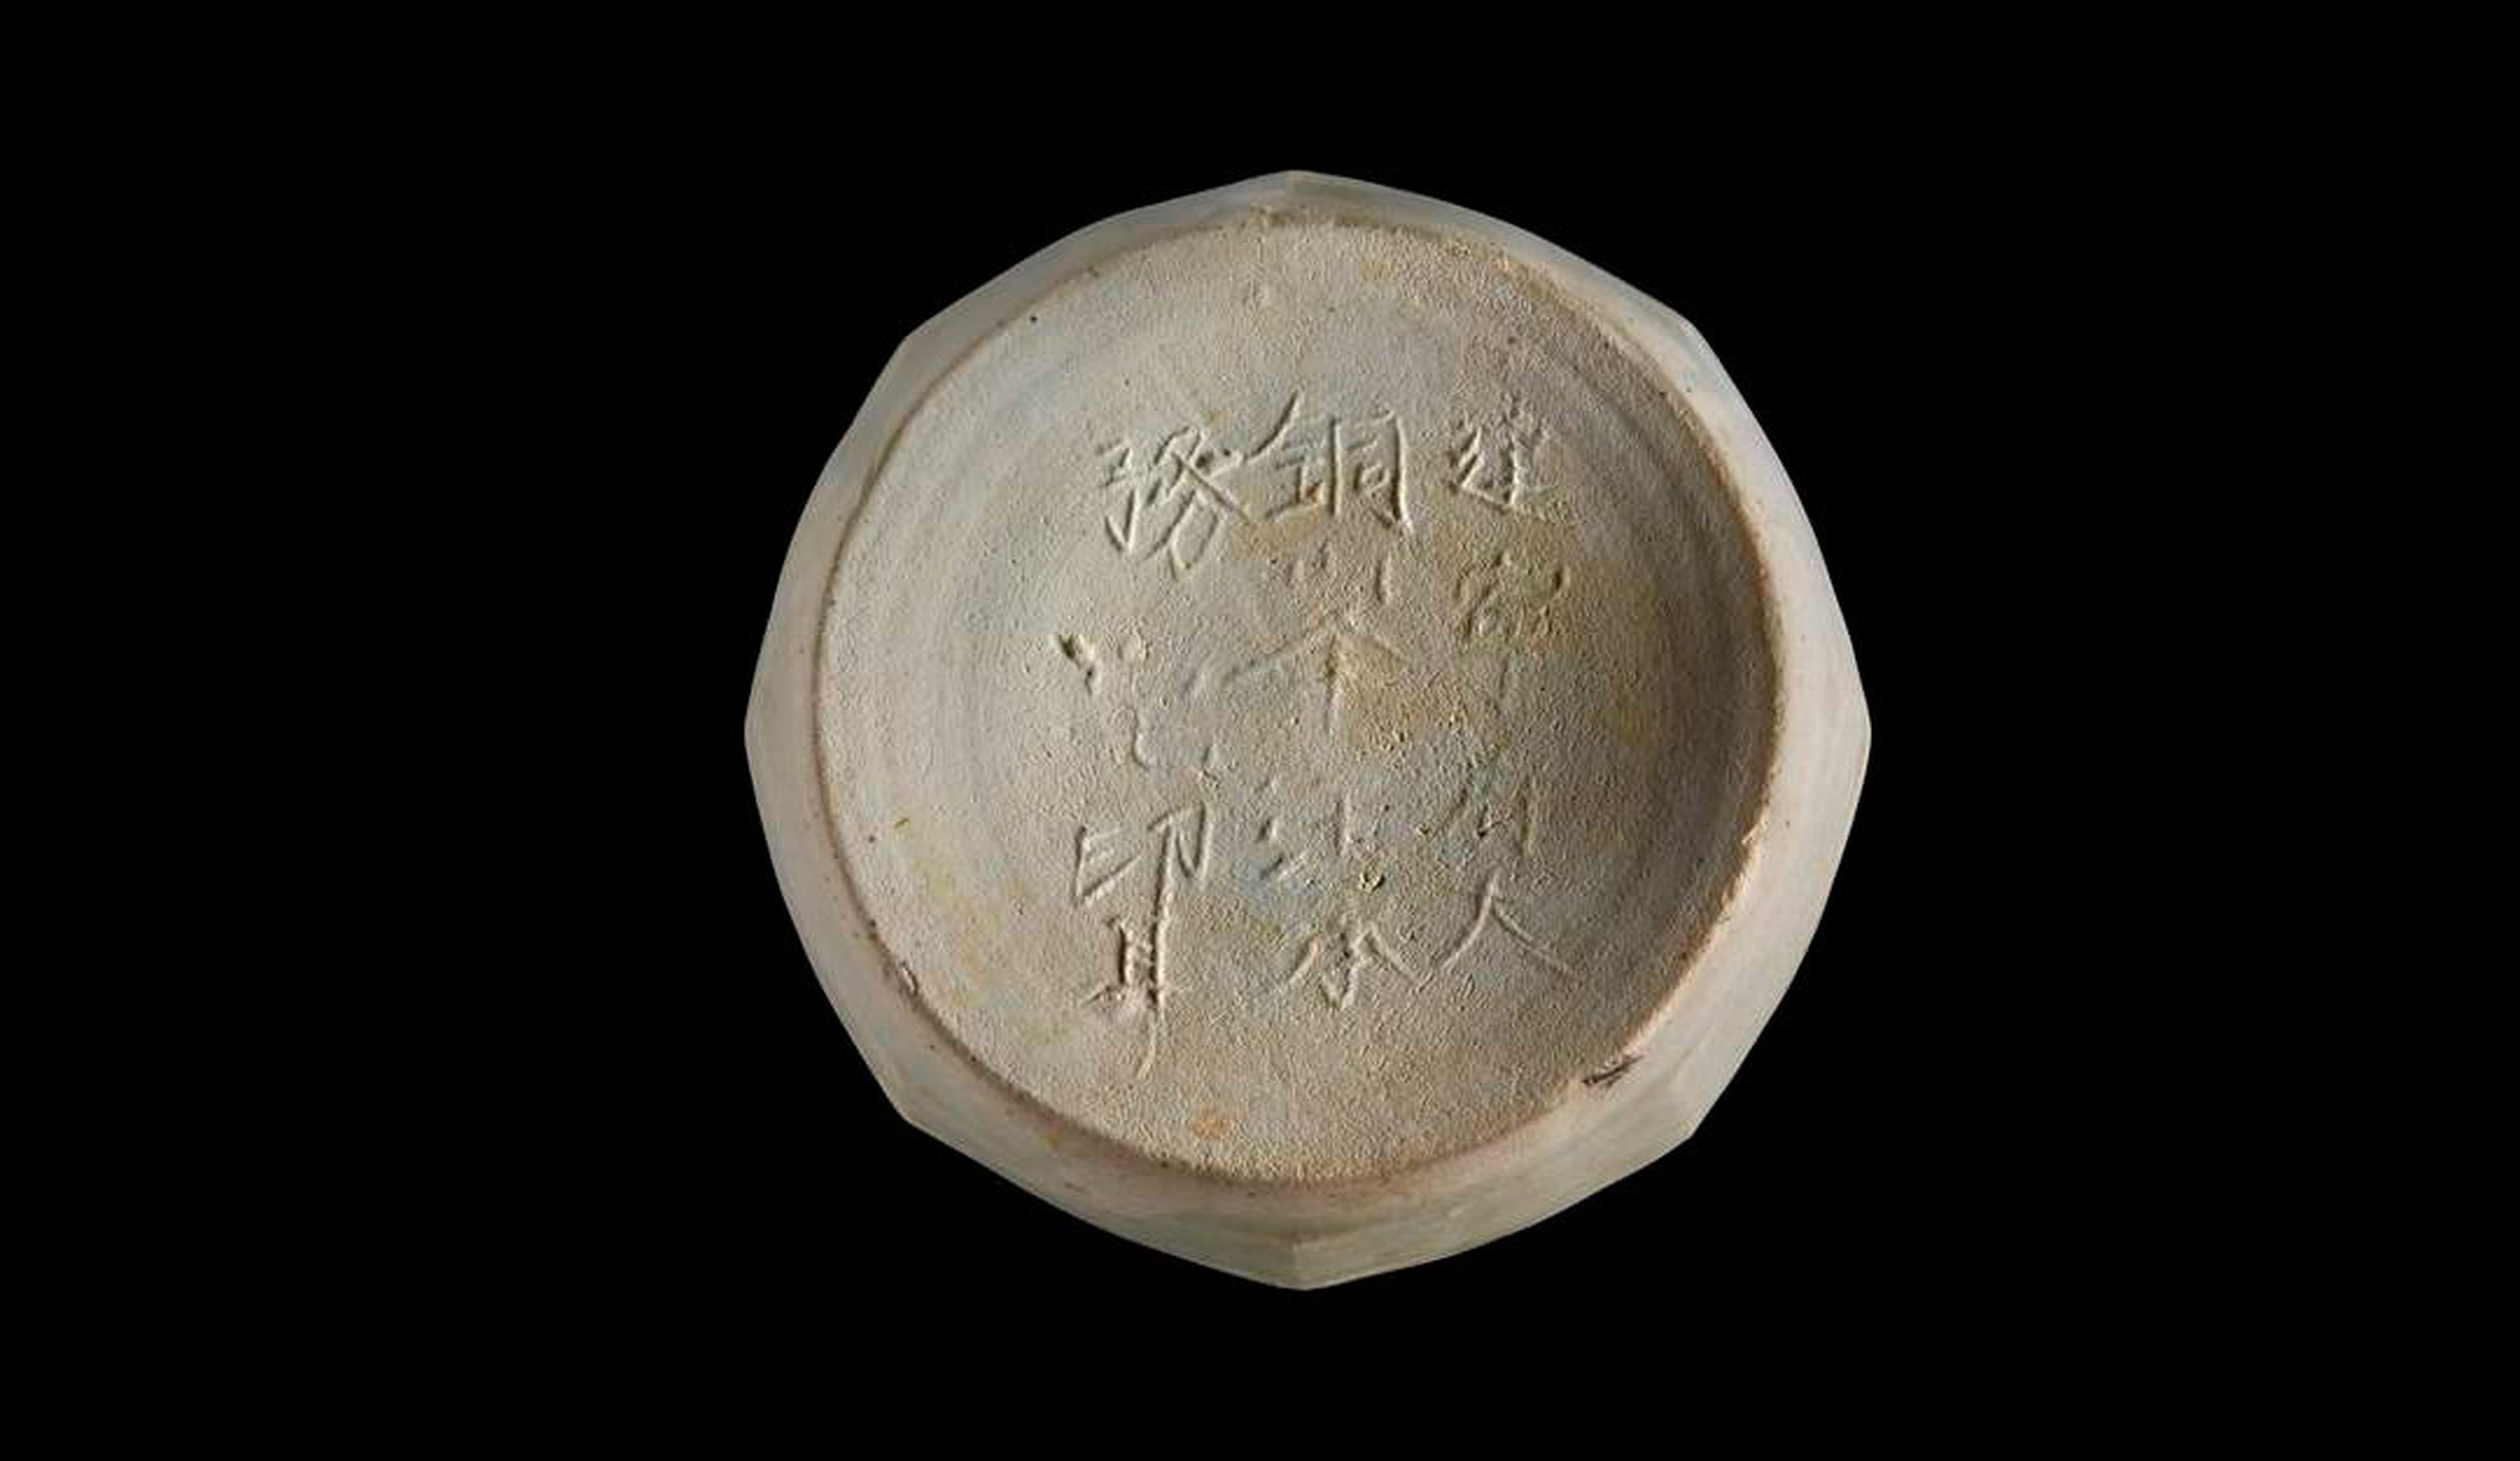 Etiqueta antigua made in China